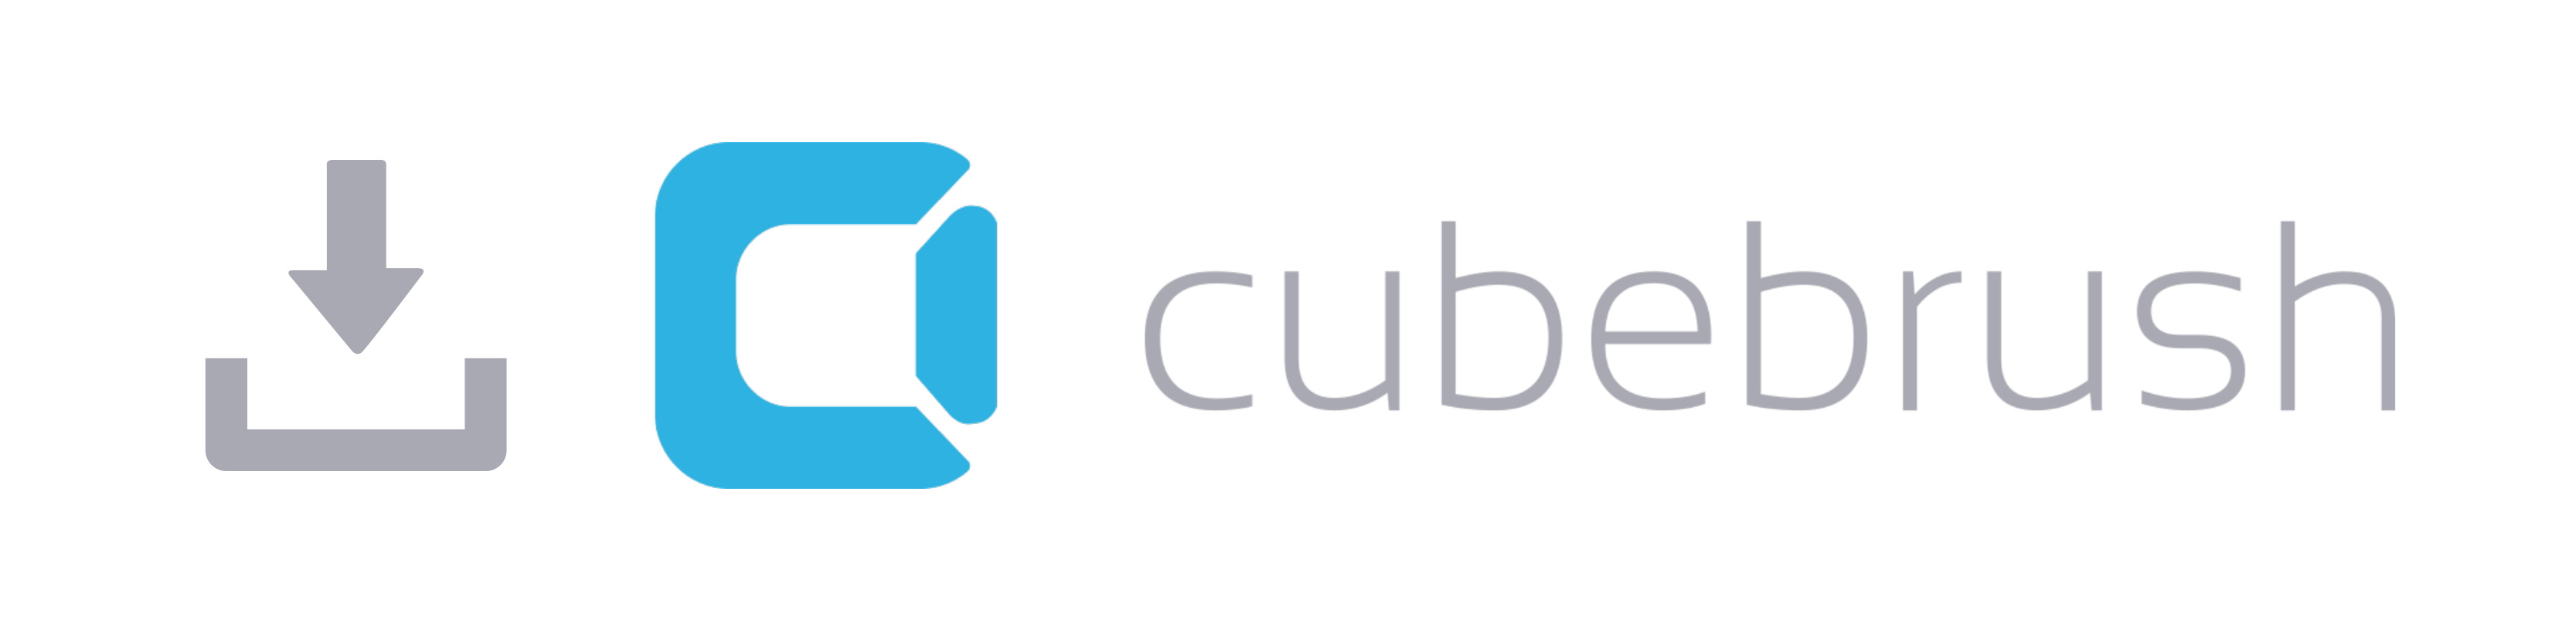 CubeBrush